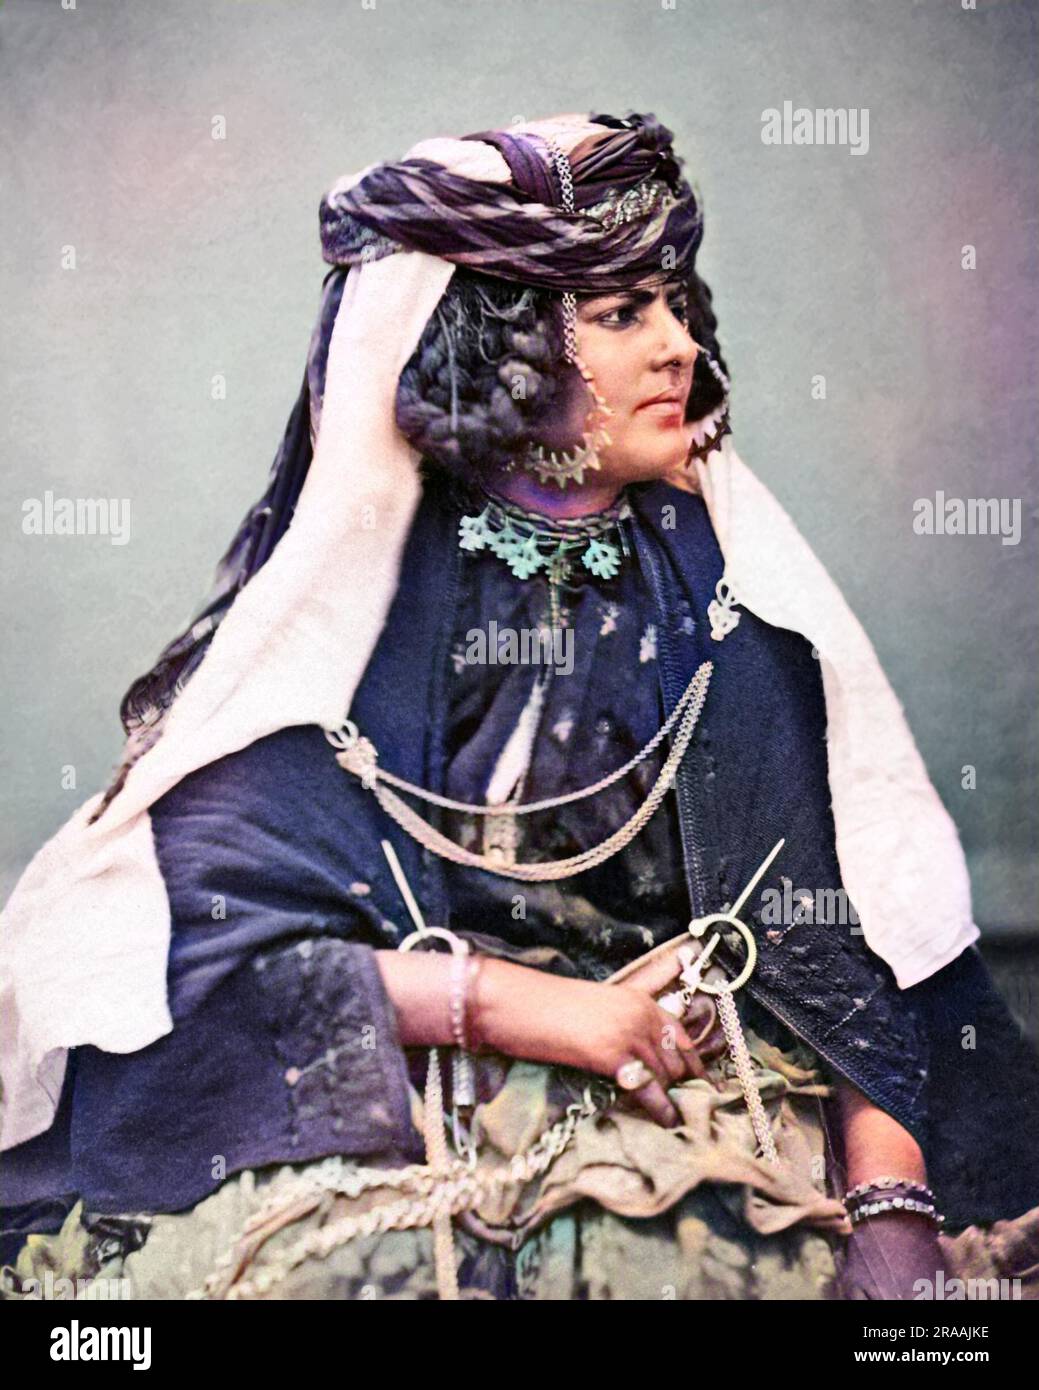 Ouled Nail Woman, Algérie, spécialisée dans un style particulier de danse. Date: Vers 1870 Banque D'Images